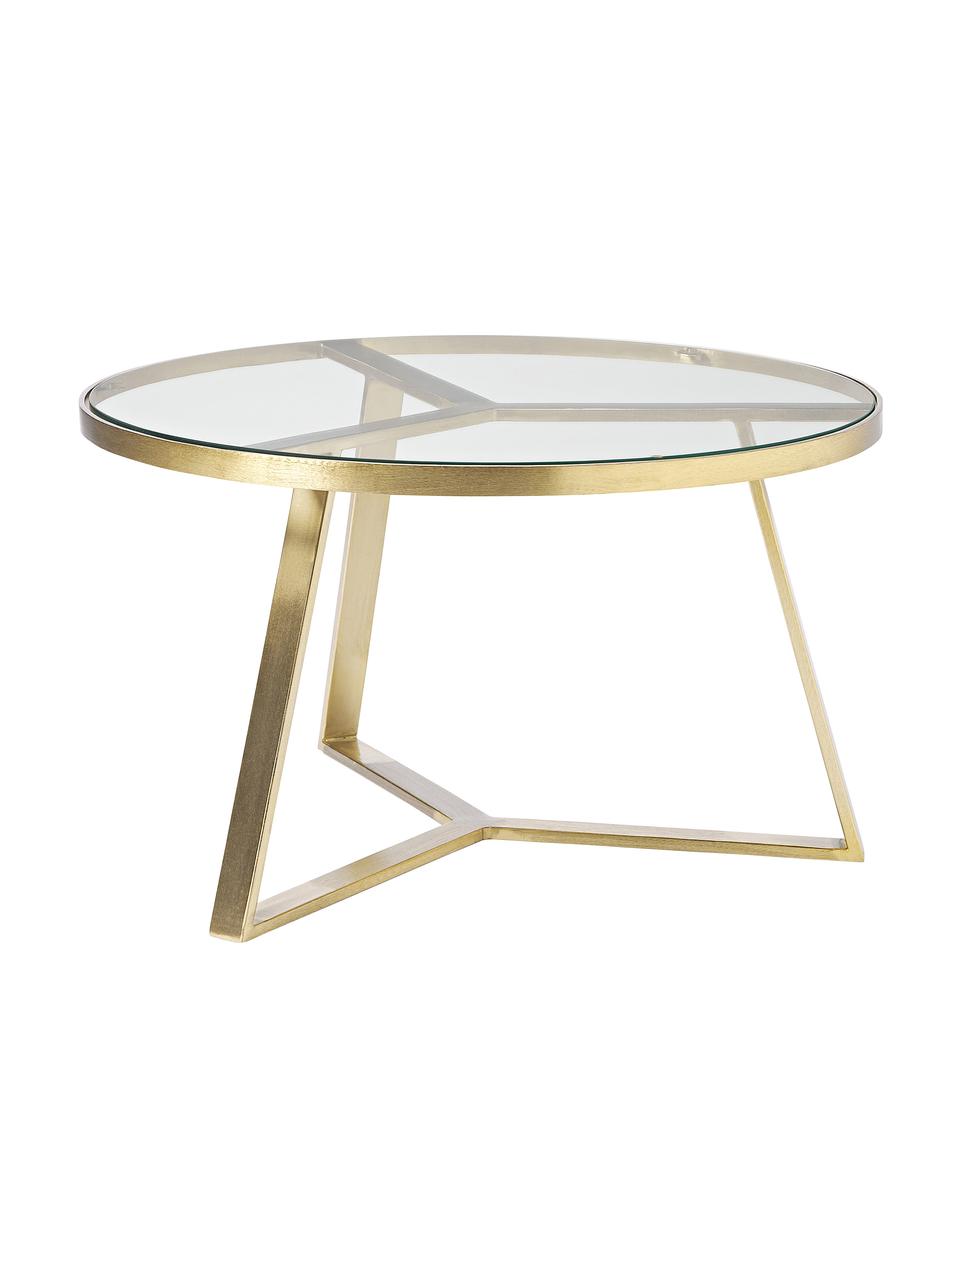 Table basse ronde en verre Fortunata, Transparent, couleur dorée, Ø 100 cm